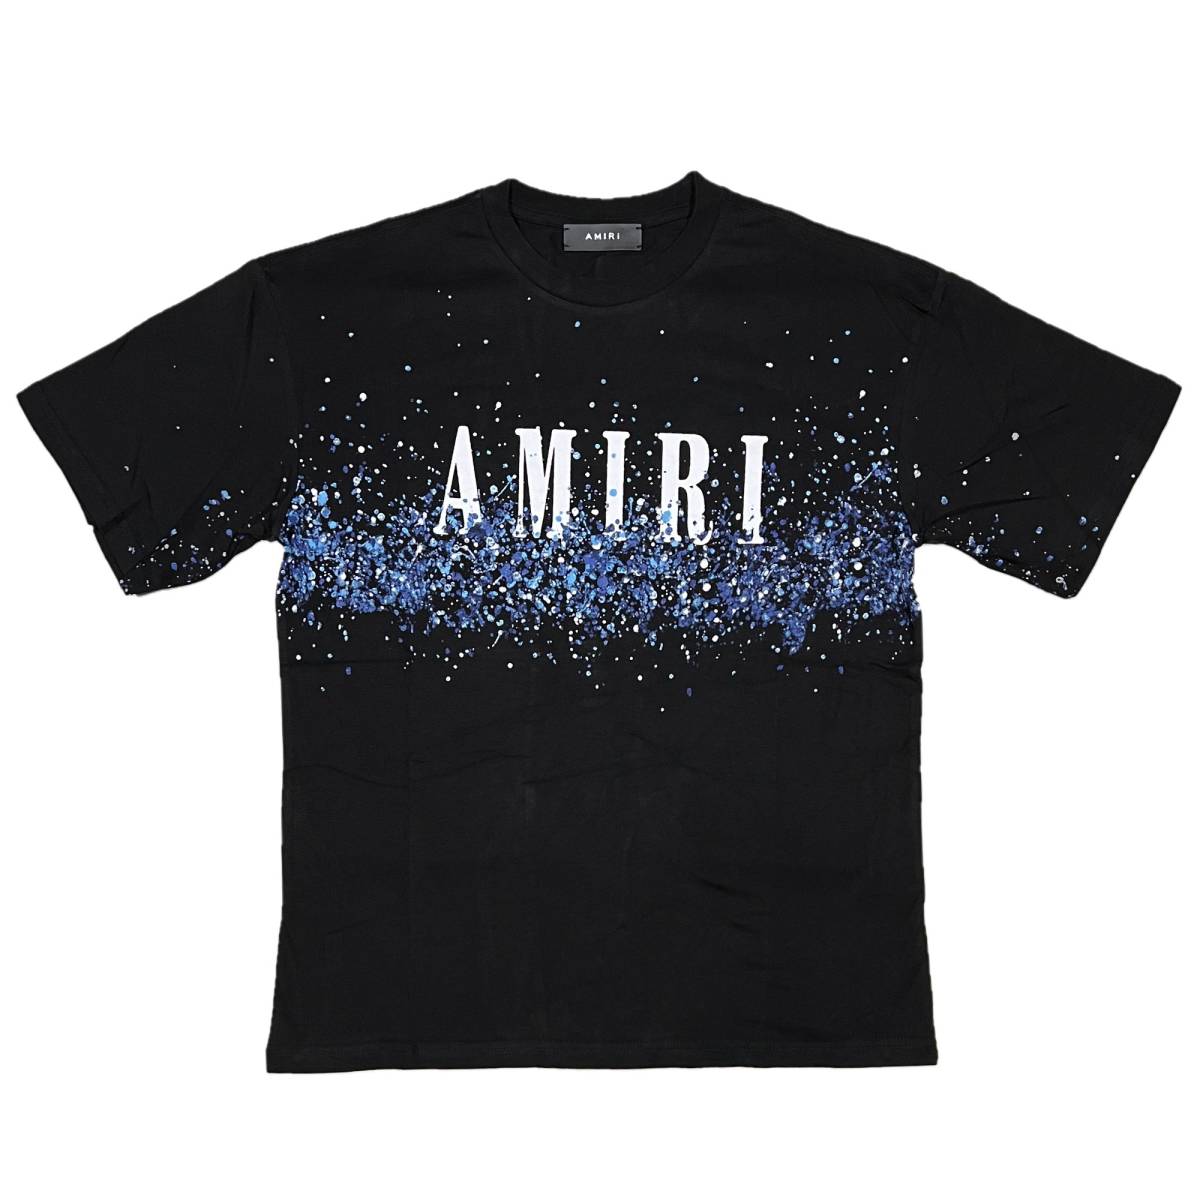 最高級 [並行輸入品] AMIRI (XL) (ブラック) Tシャツ 半袖 ブリーチ